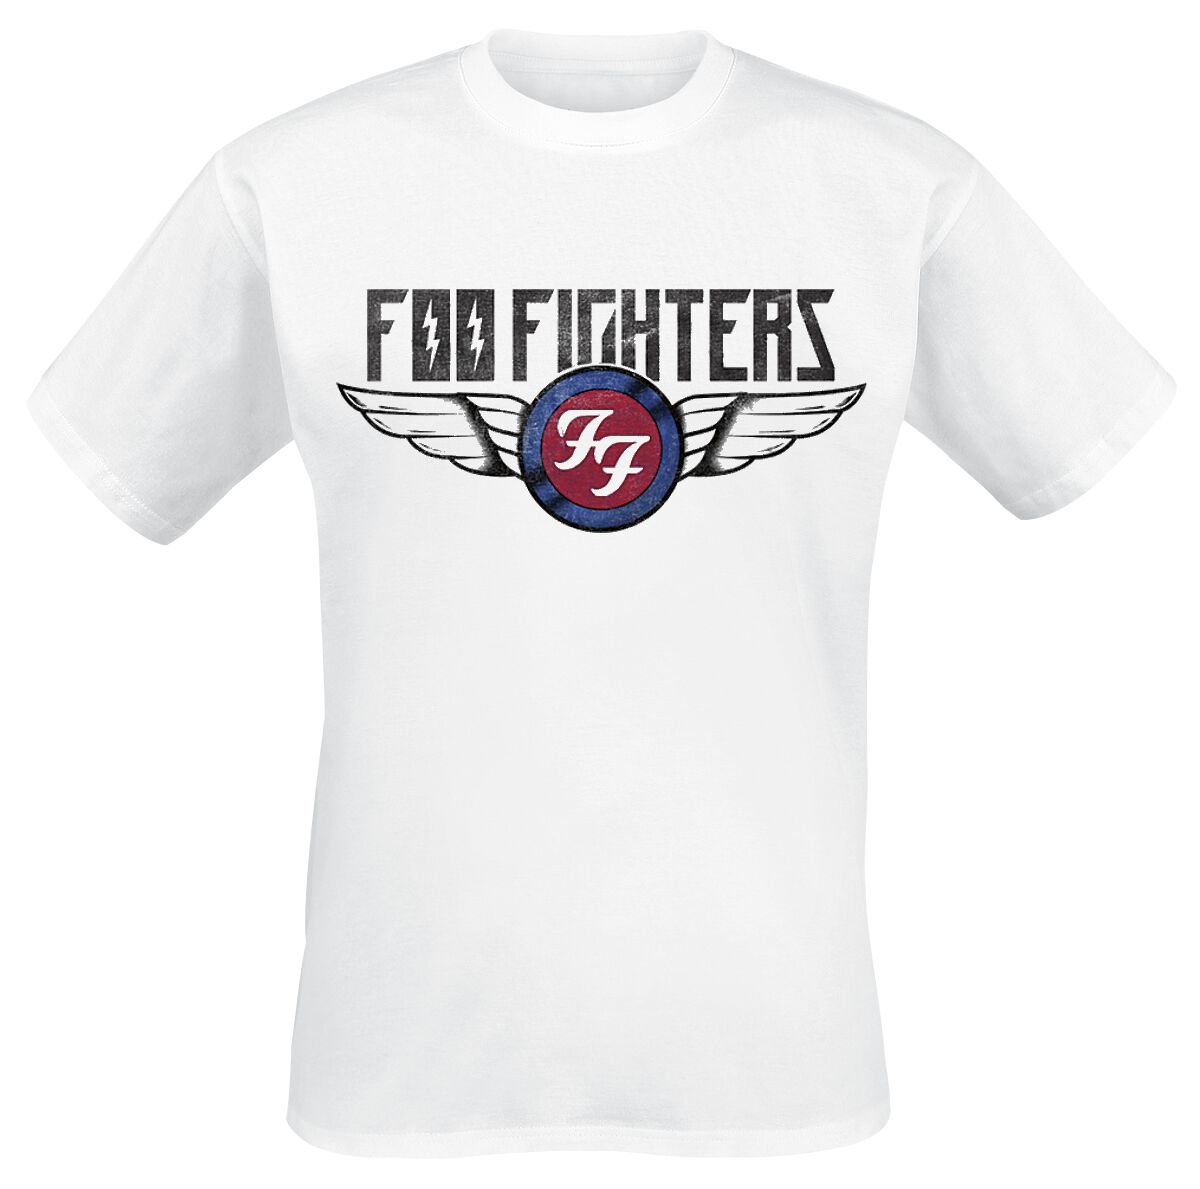 Foo Fighters T-Shirt - Flash Wings - S bis XXL - für Männer - Größe XXL - weiß  - Lizenziertes Merchandise!